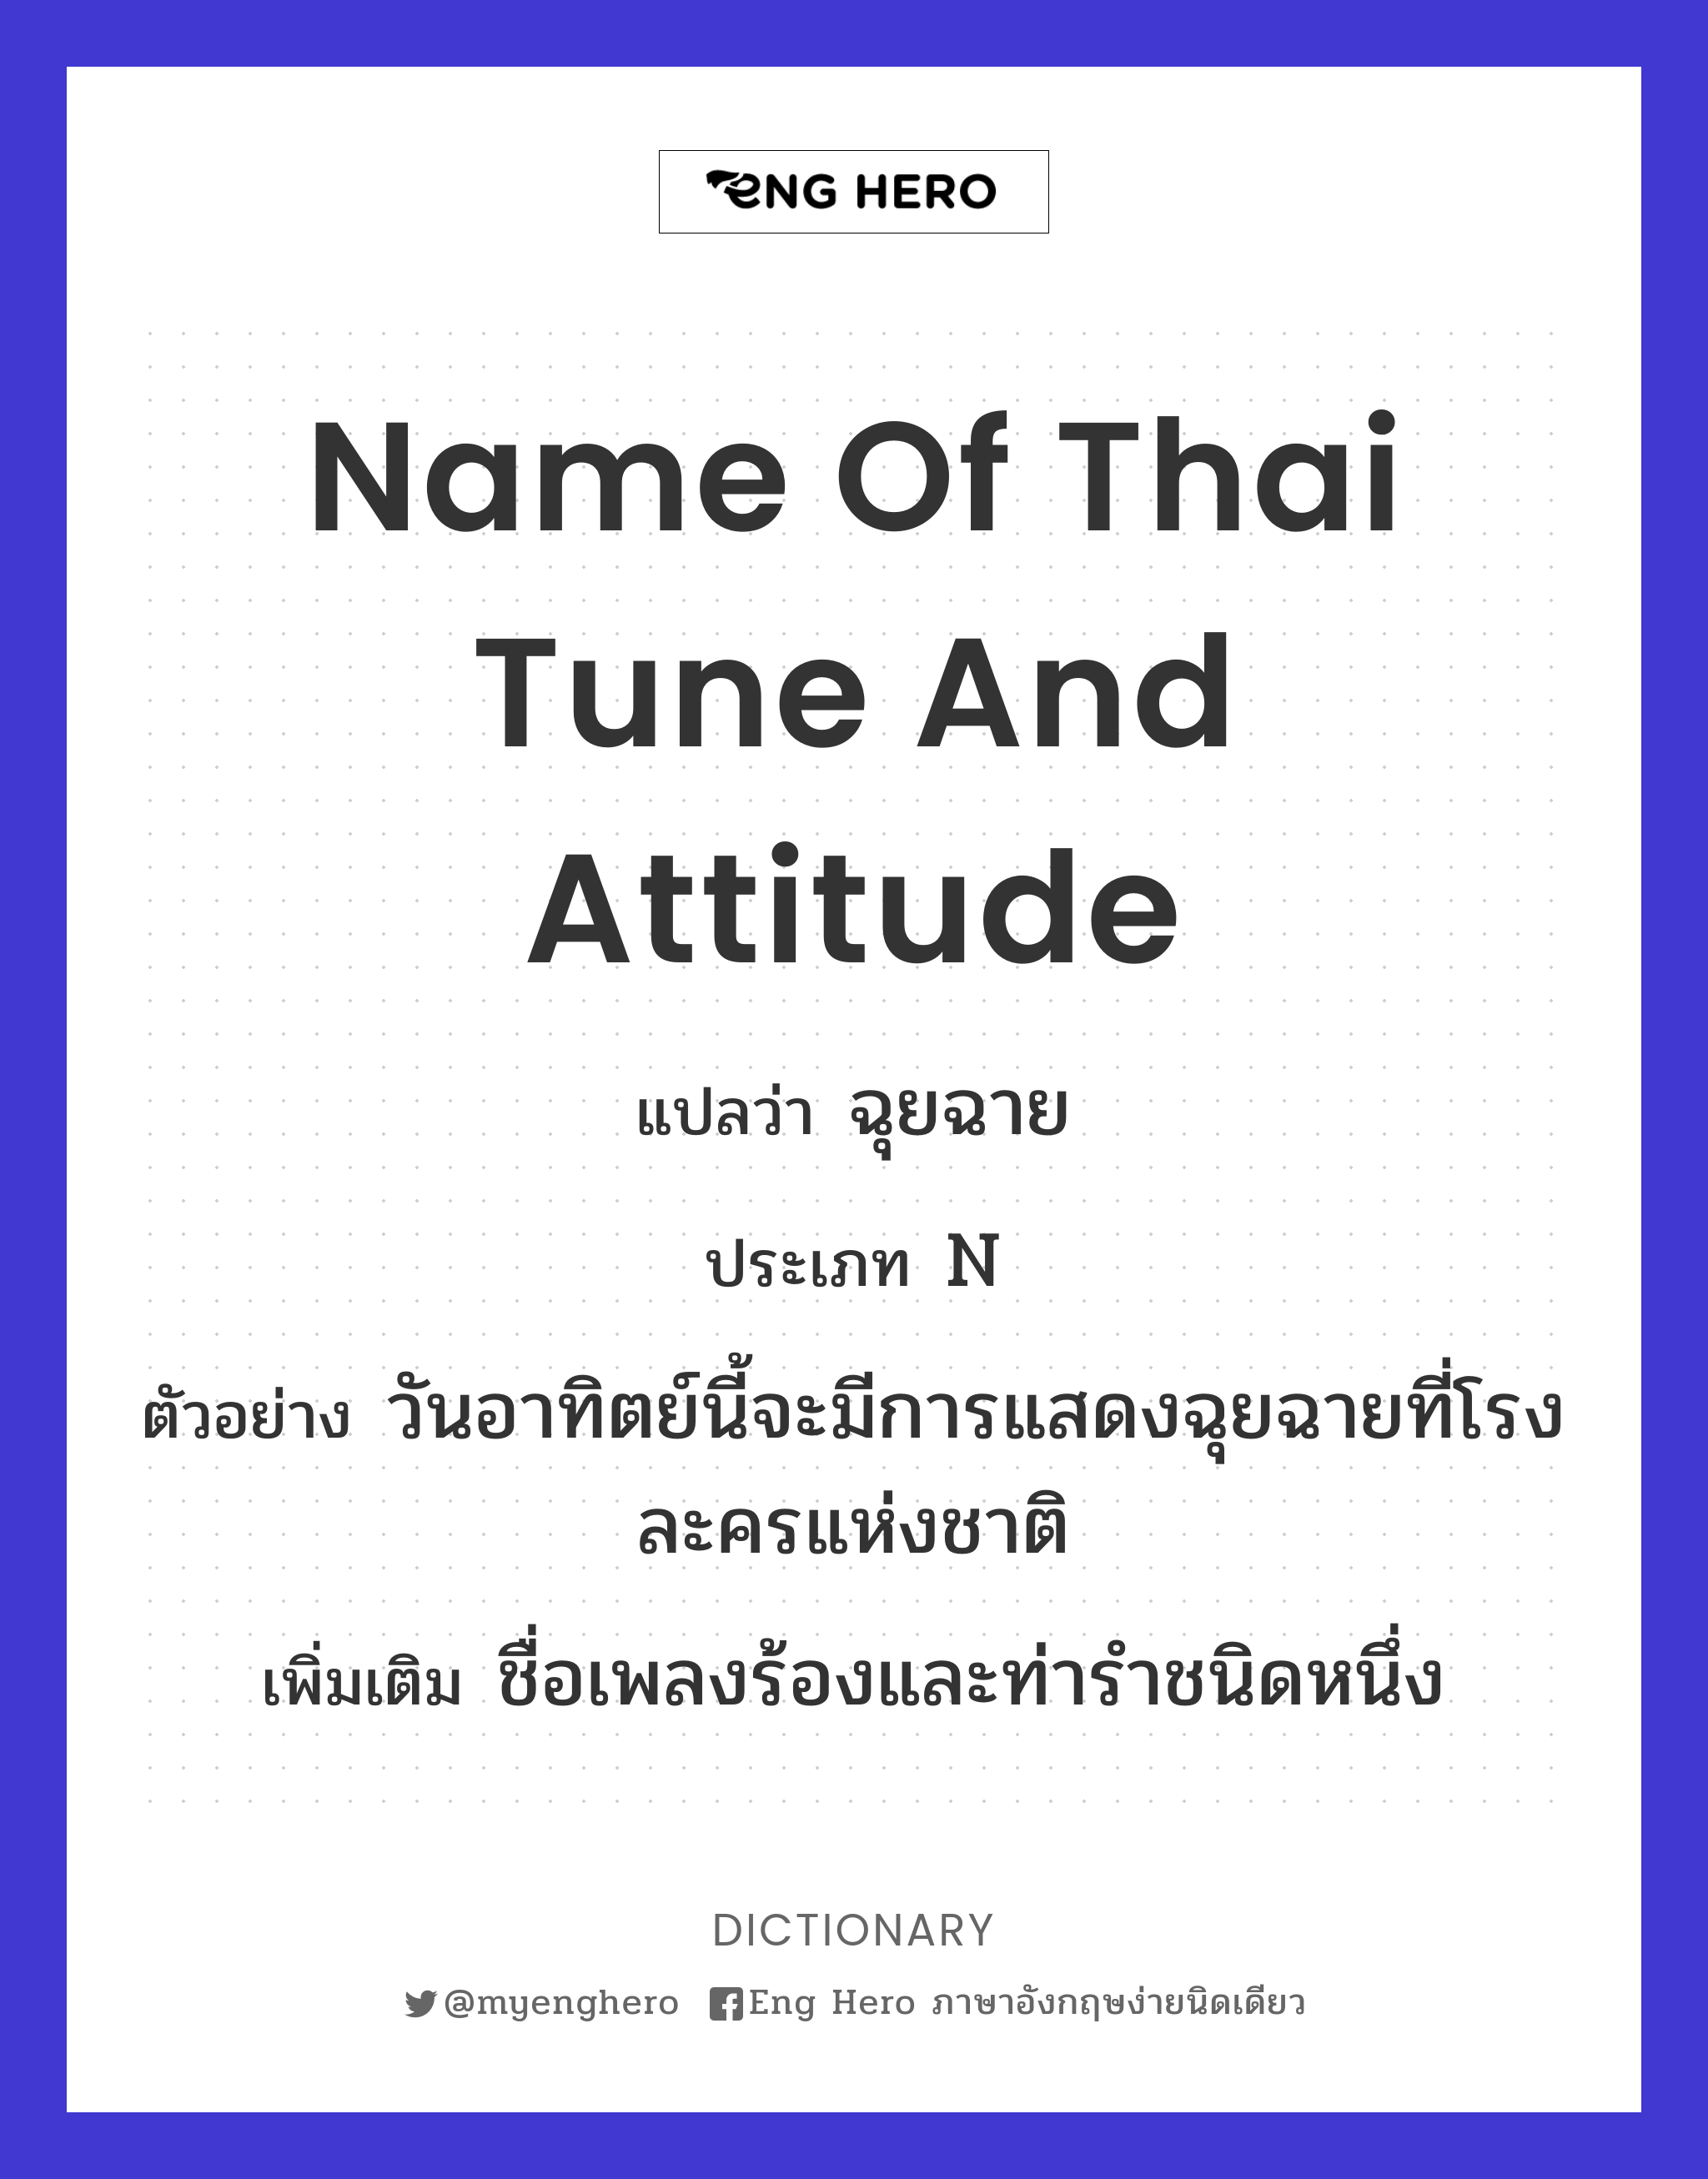 name of Thai tune and attitude